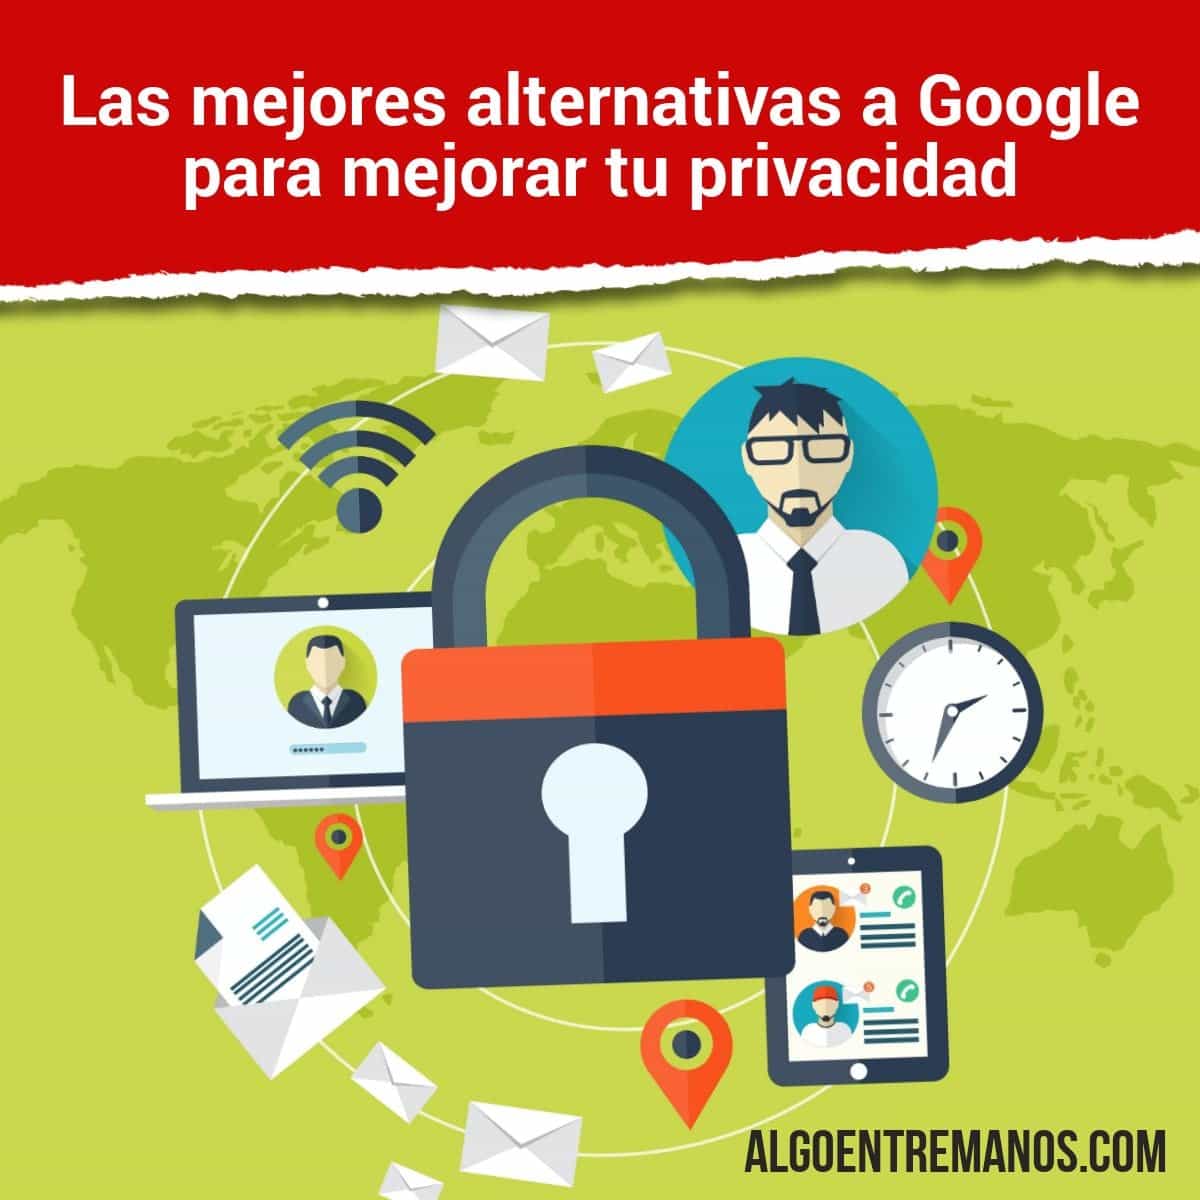 Las mejores alternativas a Google para mejorar tu privacidad